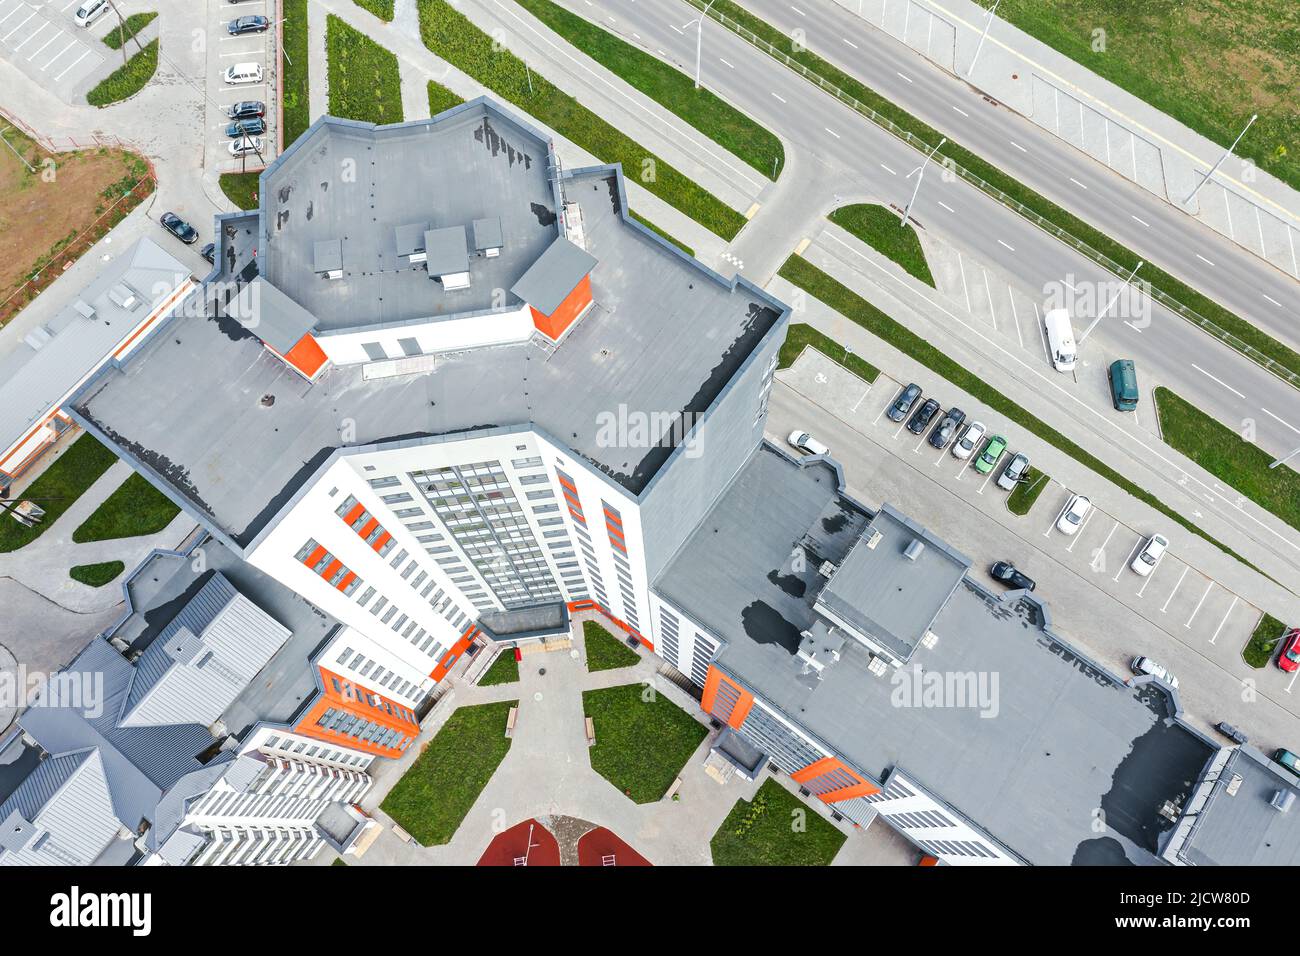 vista aérea de la parte superior del complejo de edificios residenciales de nueva construcción con parque infantil en el patio Foto de stock